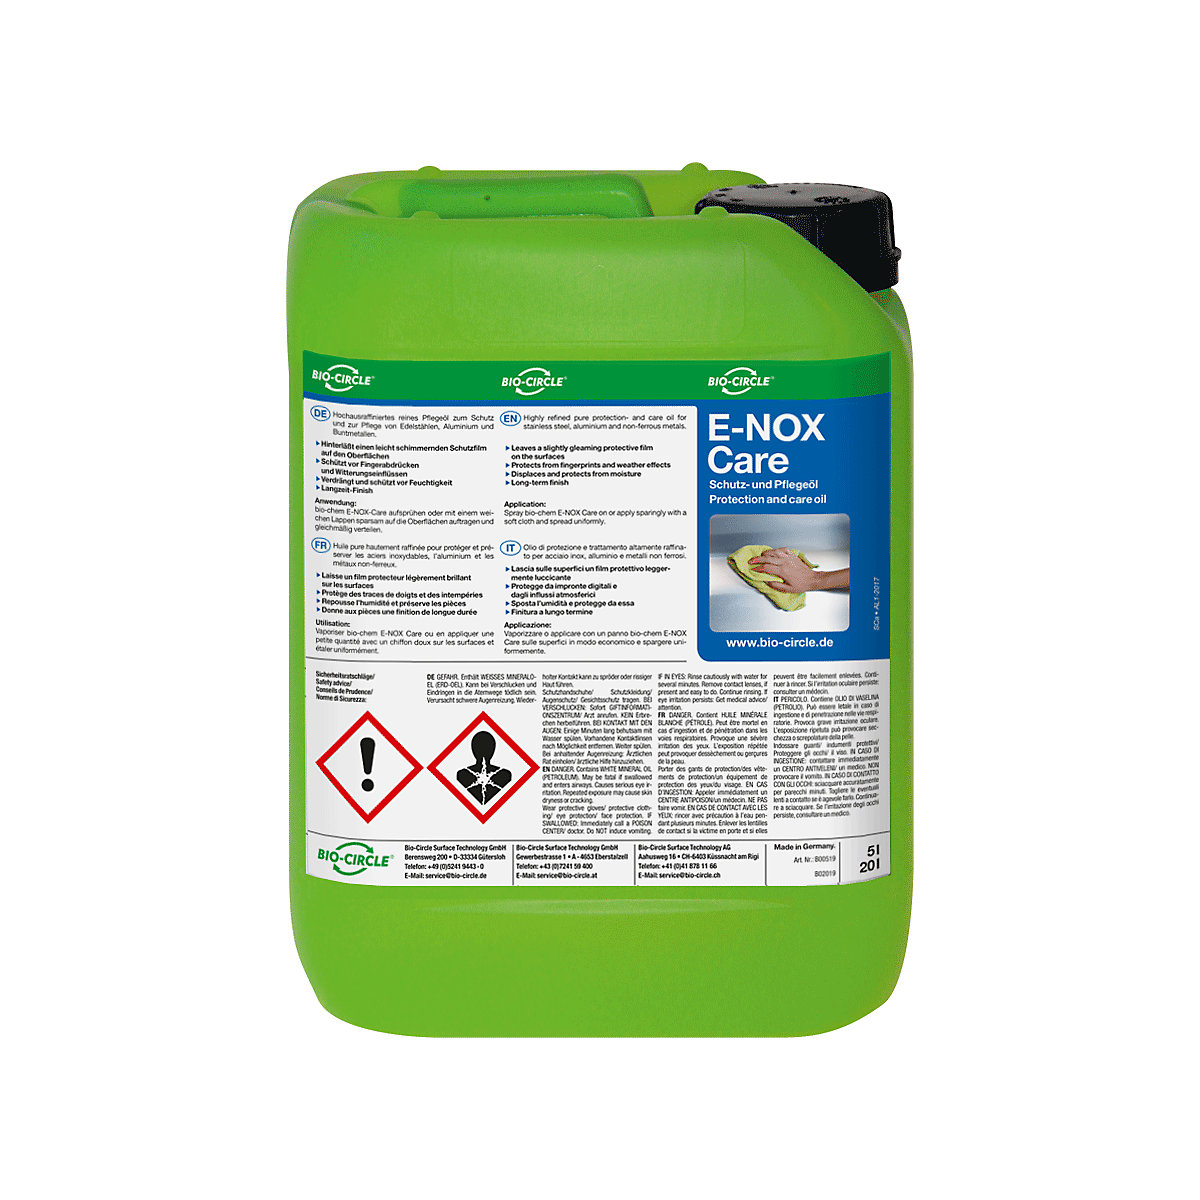 Ochranný/ošetrovací olej E-NOX Care – Bio-Circle